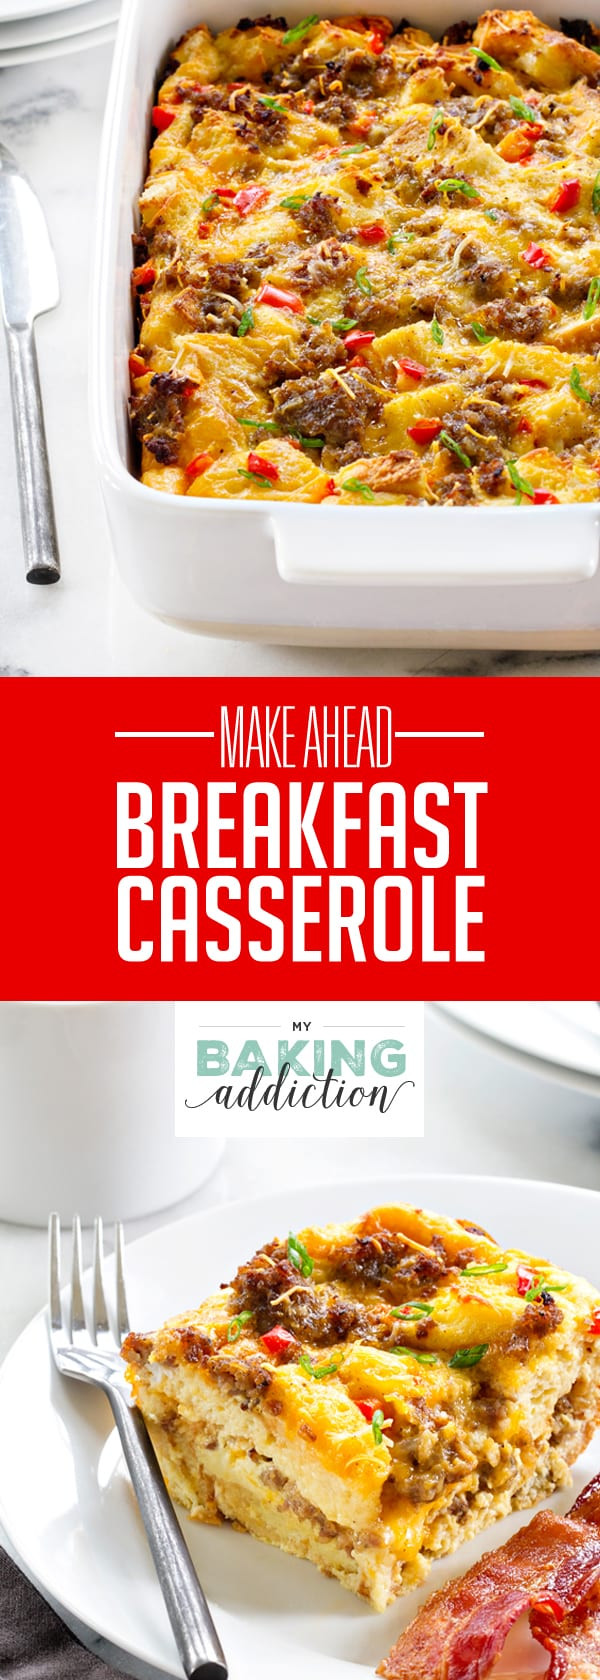 Make Ahead Breakfast Casseroles
 Make Ahead Breakfast Casserole My Baking Addiction